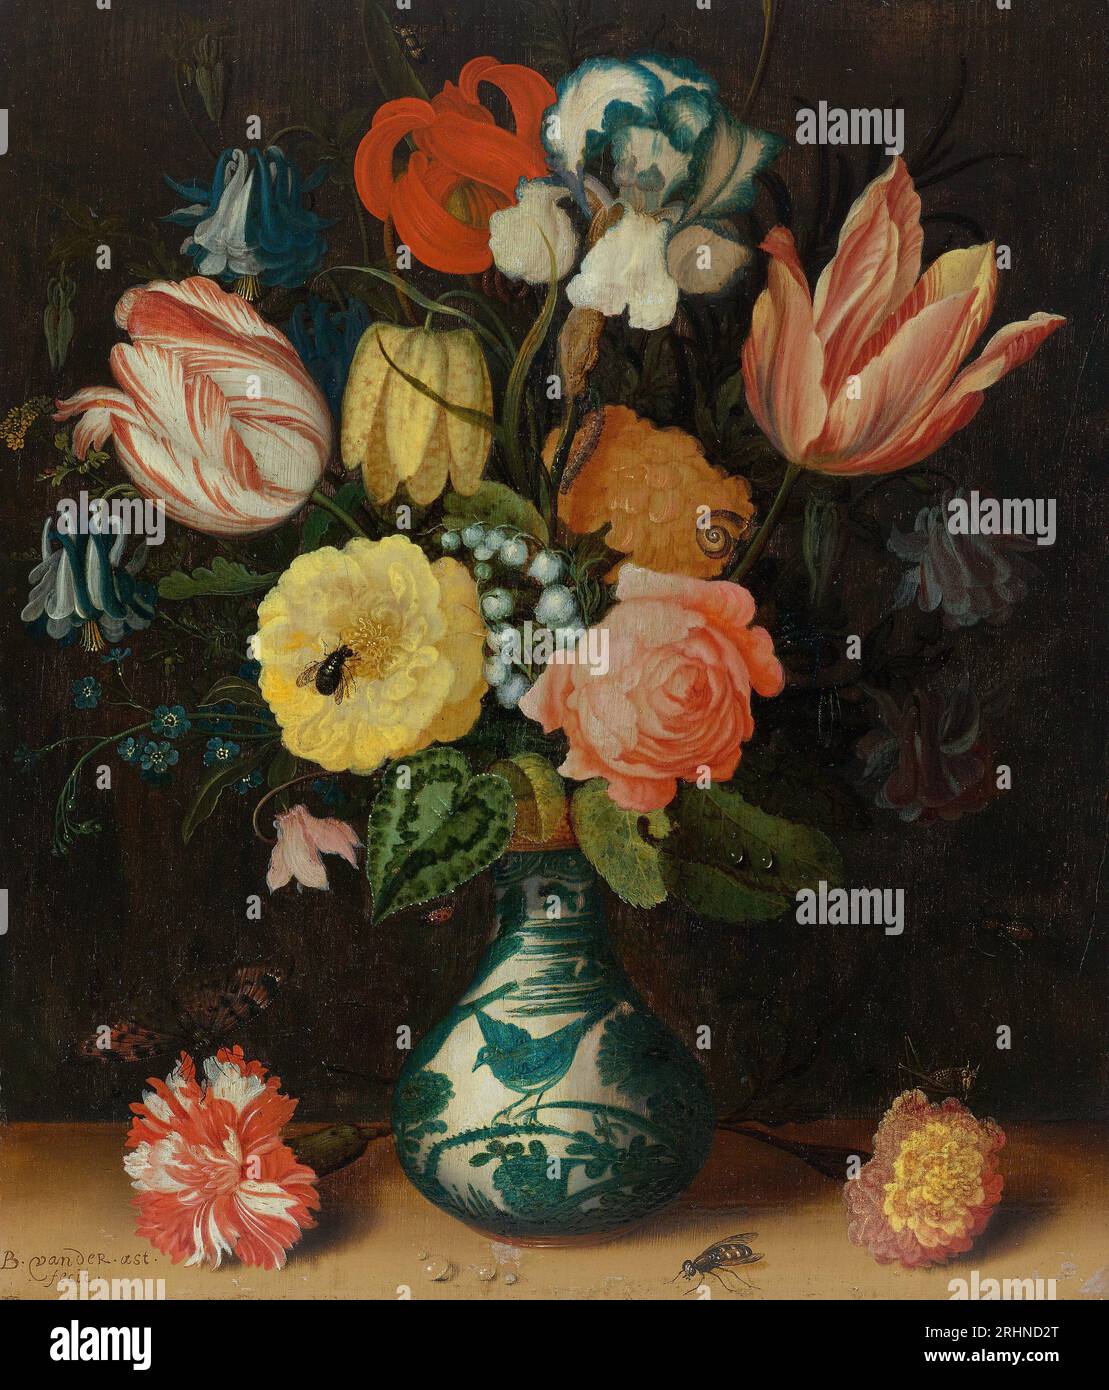 Stillleben mit Tulpen, Rosen und Nelken in einer Wan Li Porzellanvase mit Schmetterling und Insekten. Museum: PRIVATSAMMLUNG. VERFASSER: BALTHASAR VAN DER AST. Stockfoto